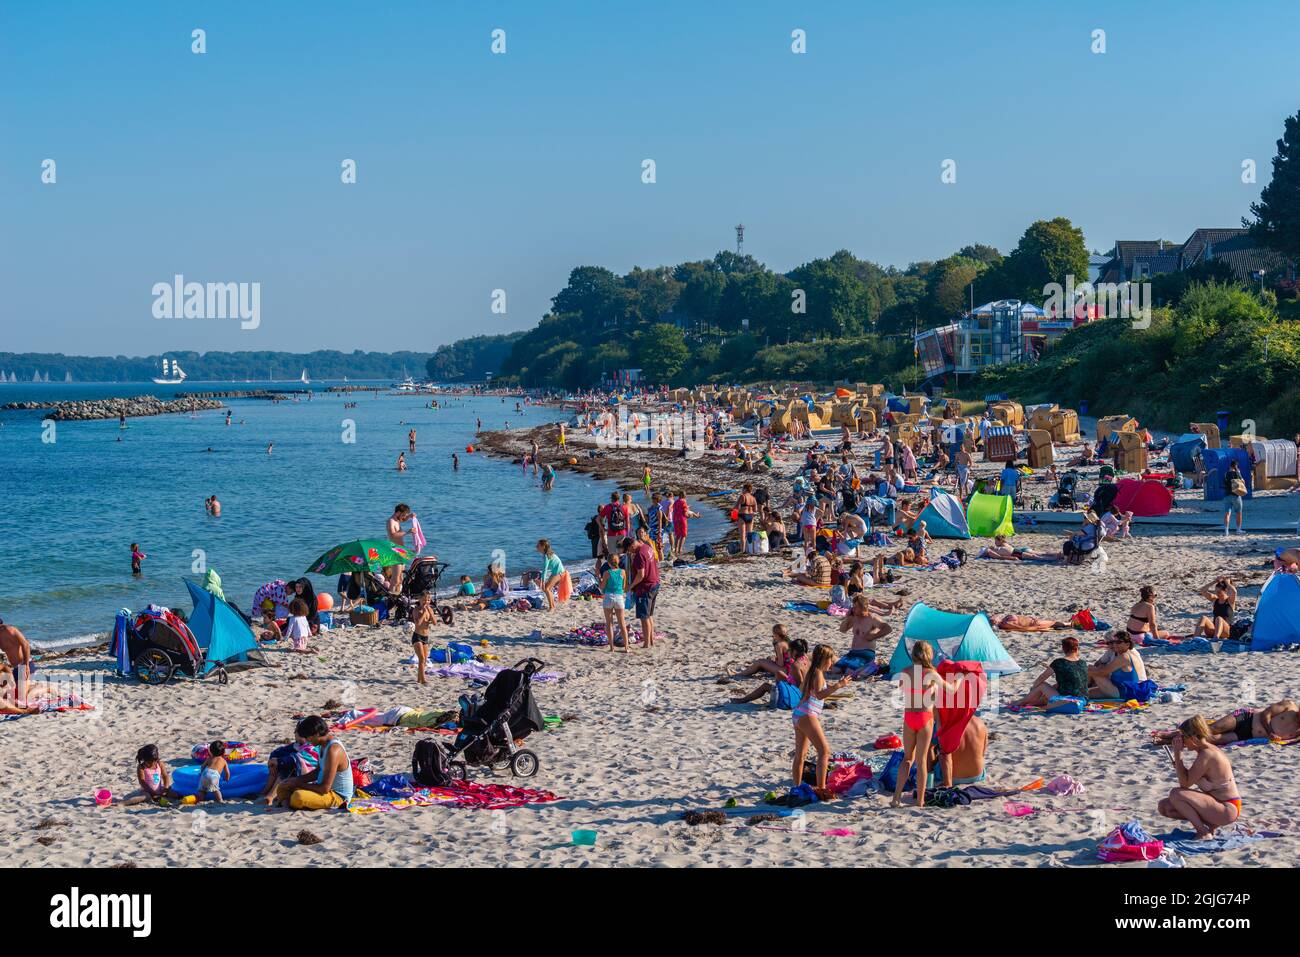 Spiaggia di sabbia a Kiel-Schilksee sul Mar Baltico, persone che prendono il sole e nuotano, Kiel-Schilksee, Kiel, Schleswig-Holstein, Mar Baltico, Germania settentrionale Foto Stock